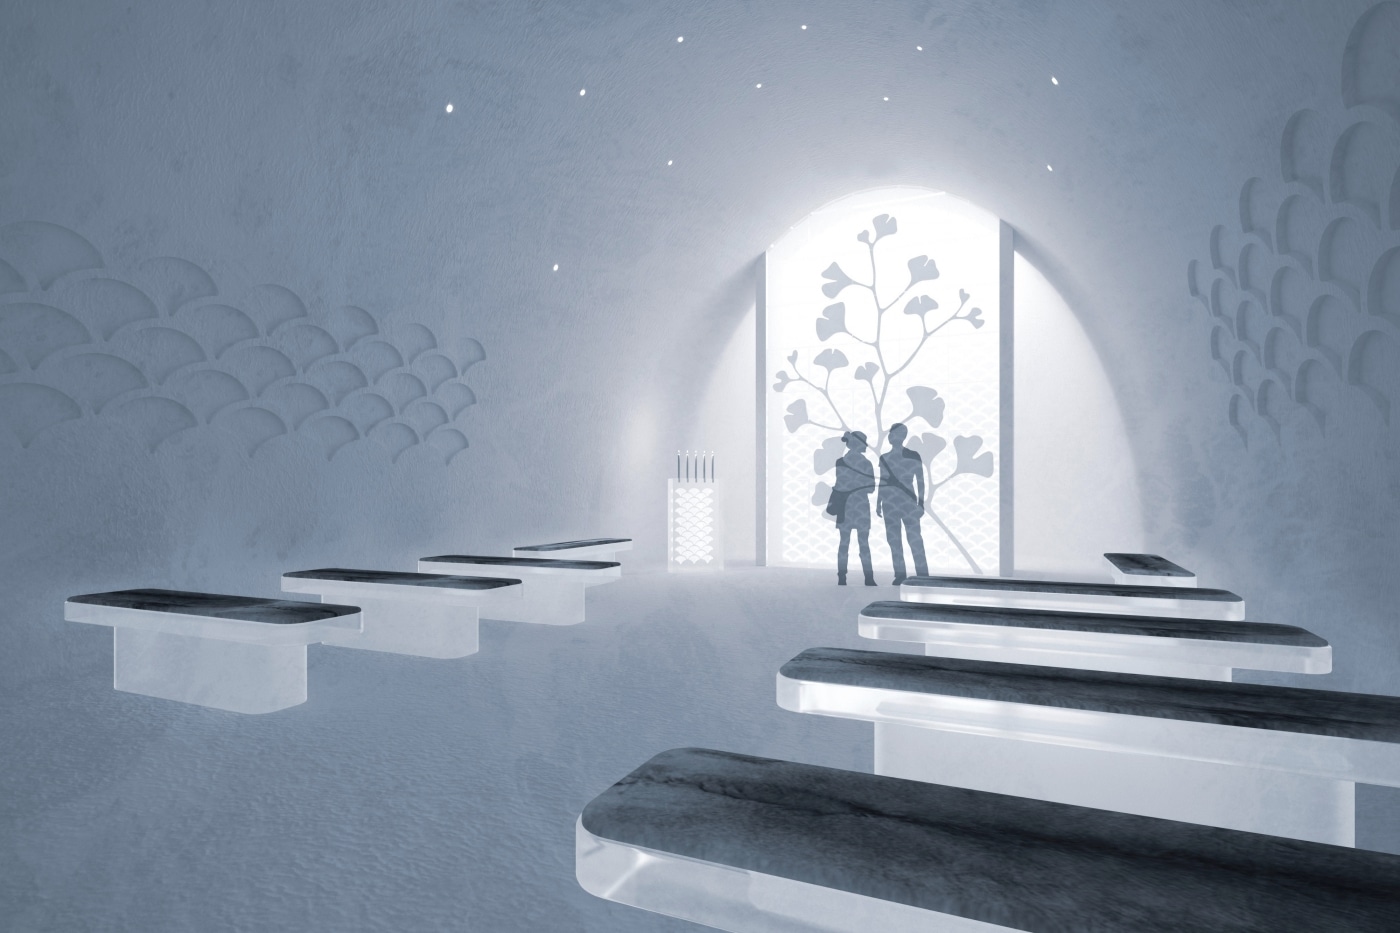 Diseño de habitaciones para hotel de hielo en Suecia